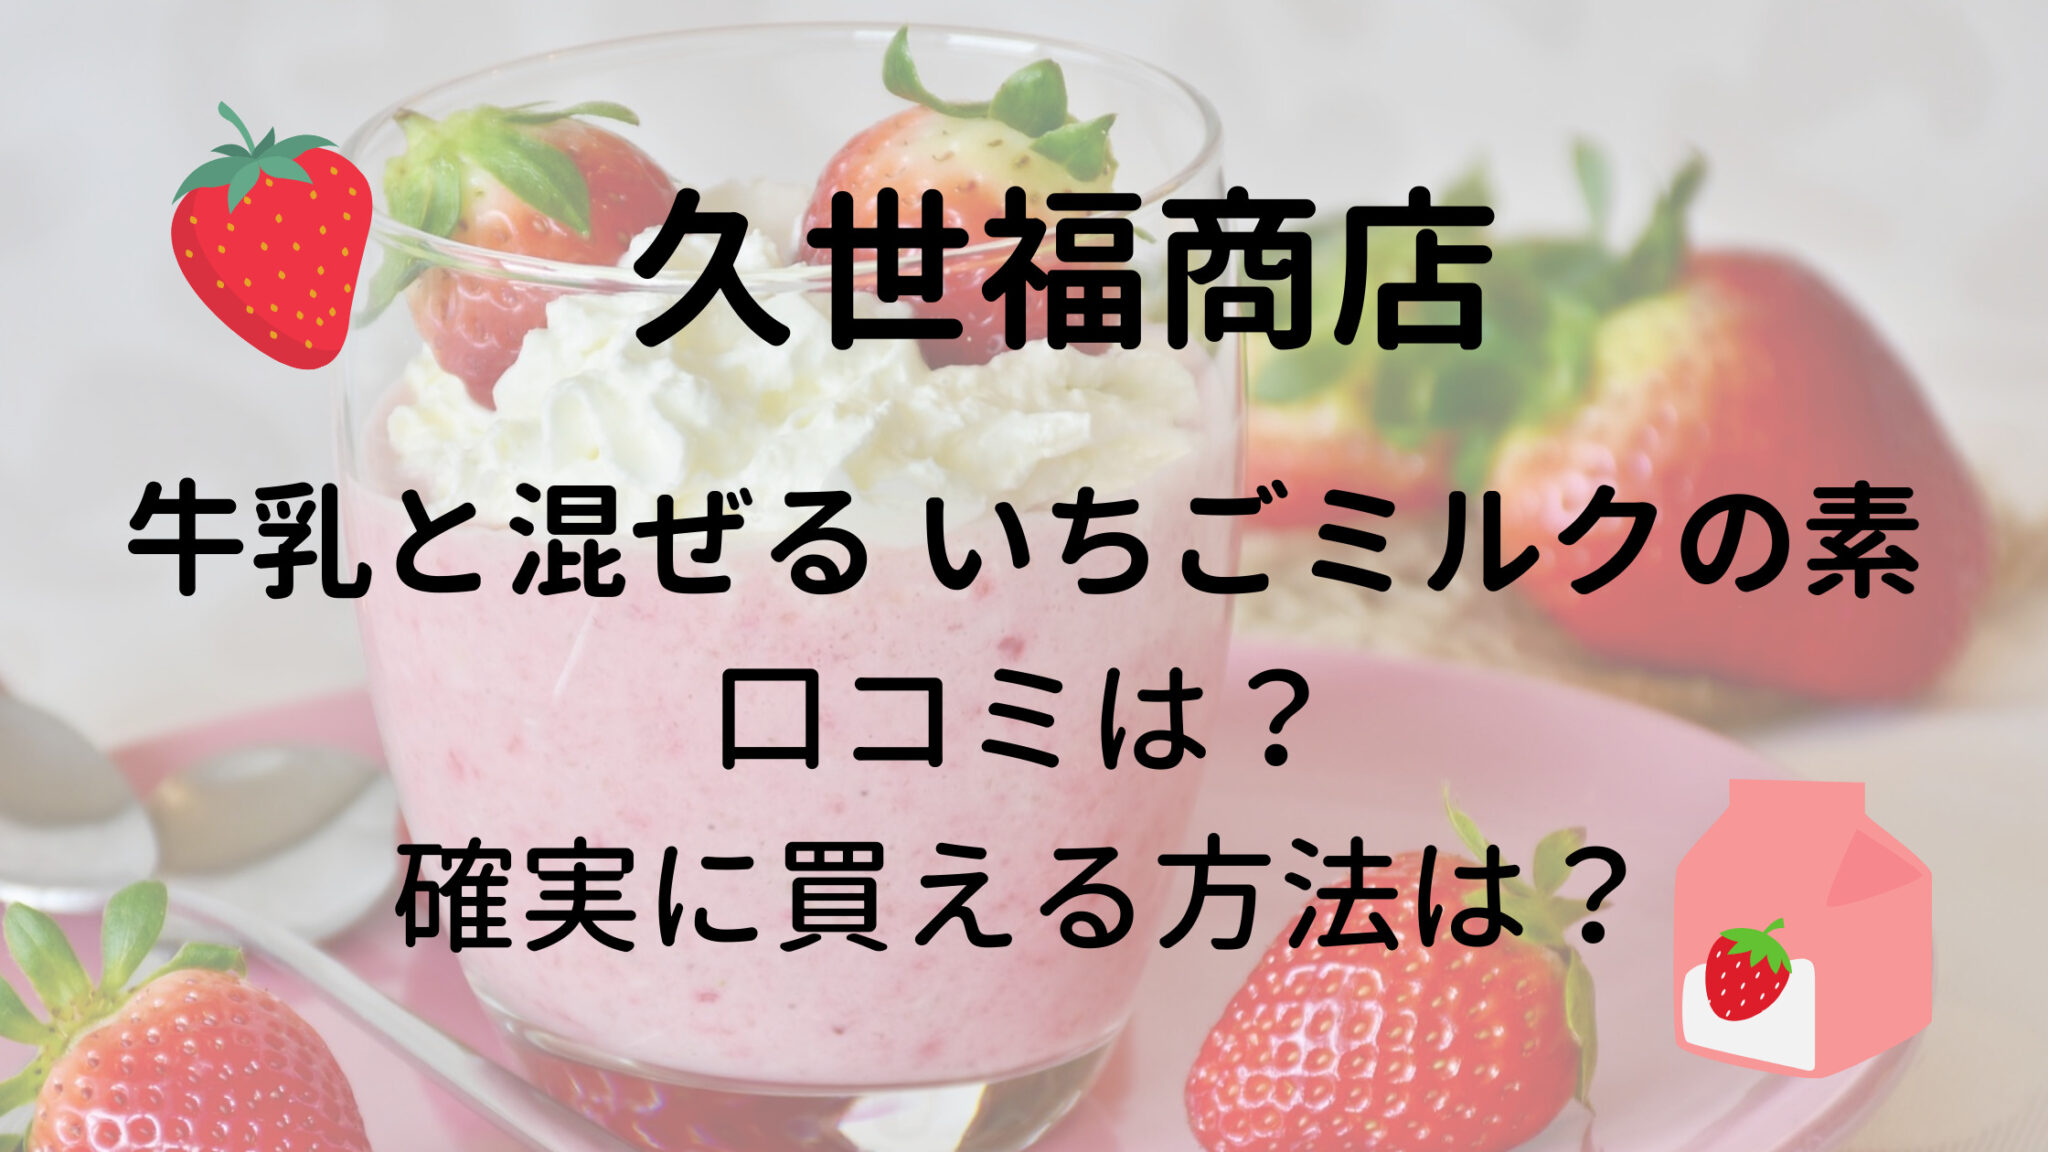 日本フーズケミカル幸いちご味、活いちご風味 直販廉価 oruan.es